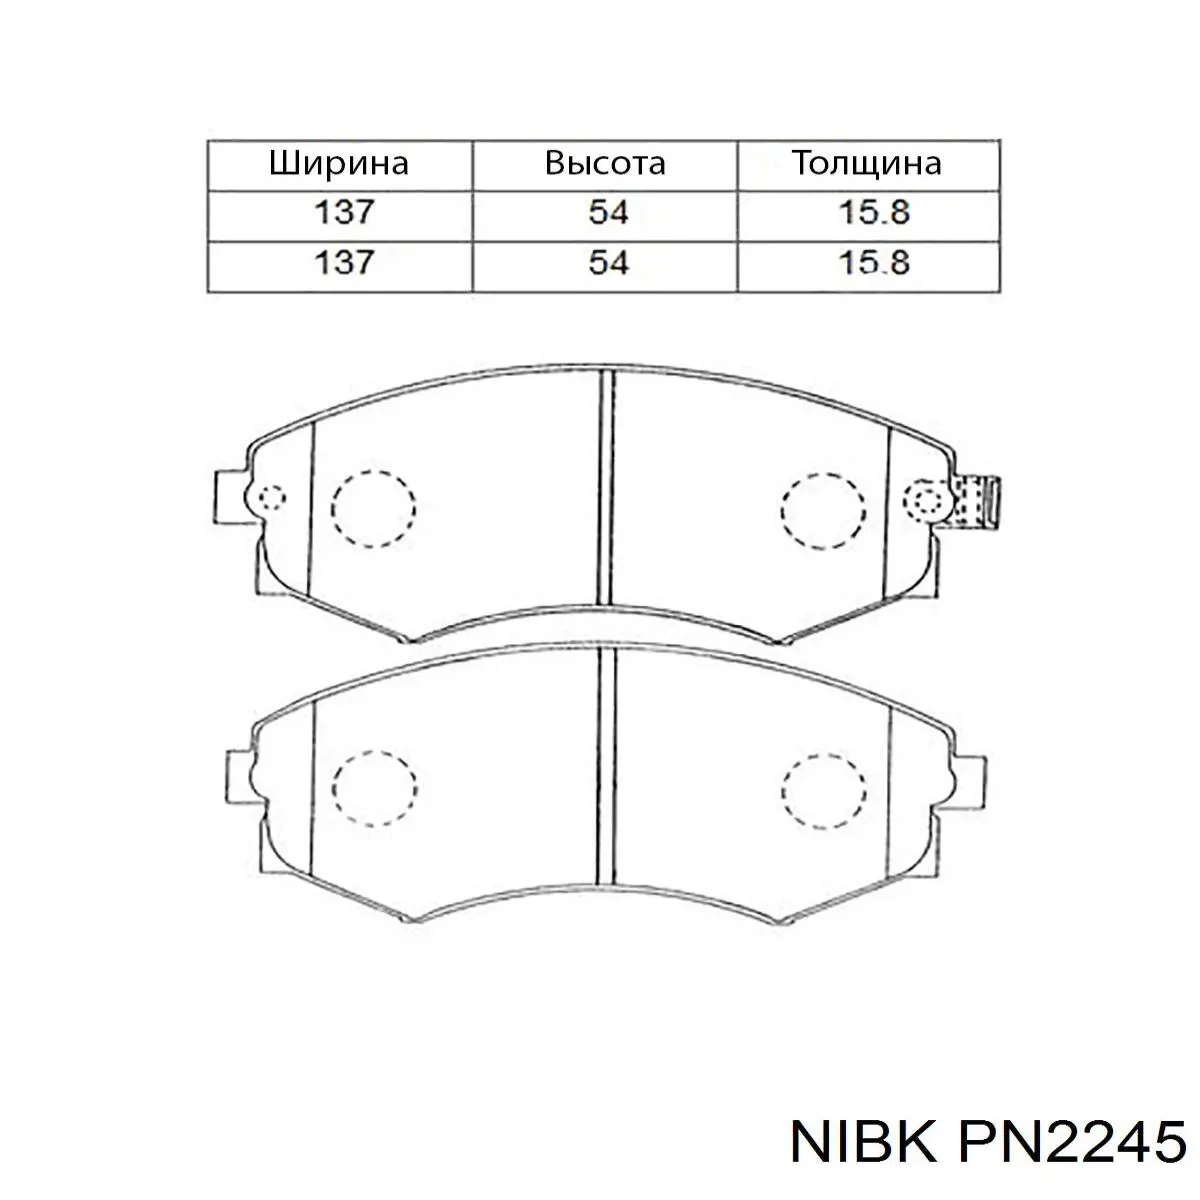 PN 2245 Nibk колодки тормозные передние дисковые